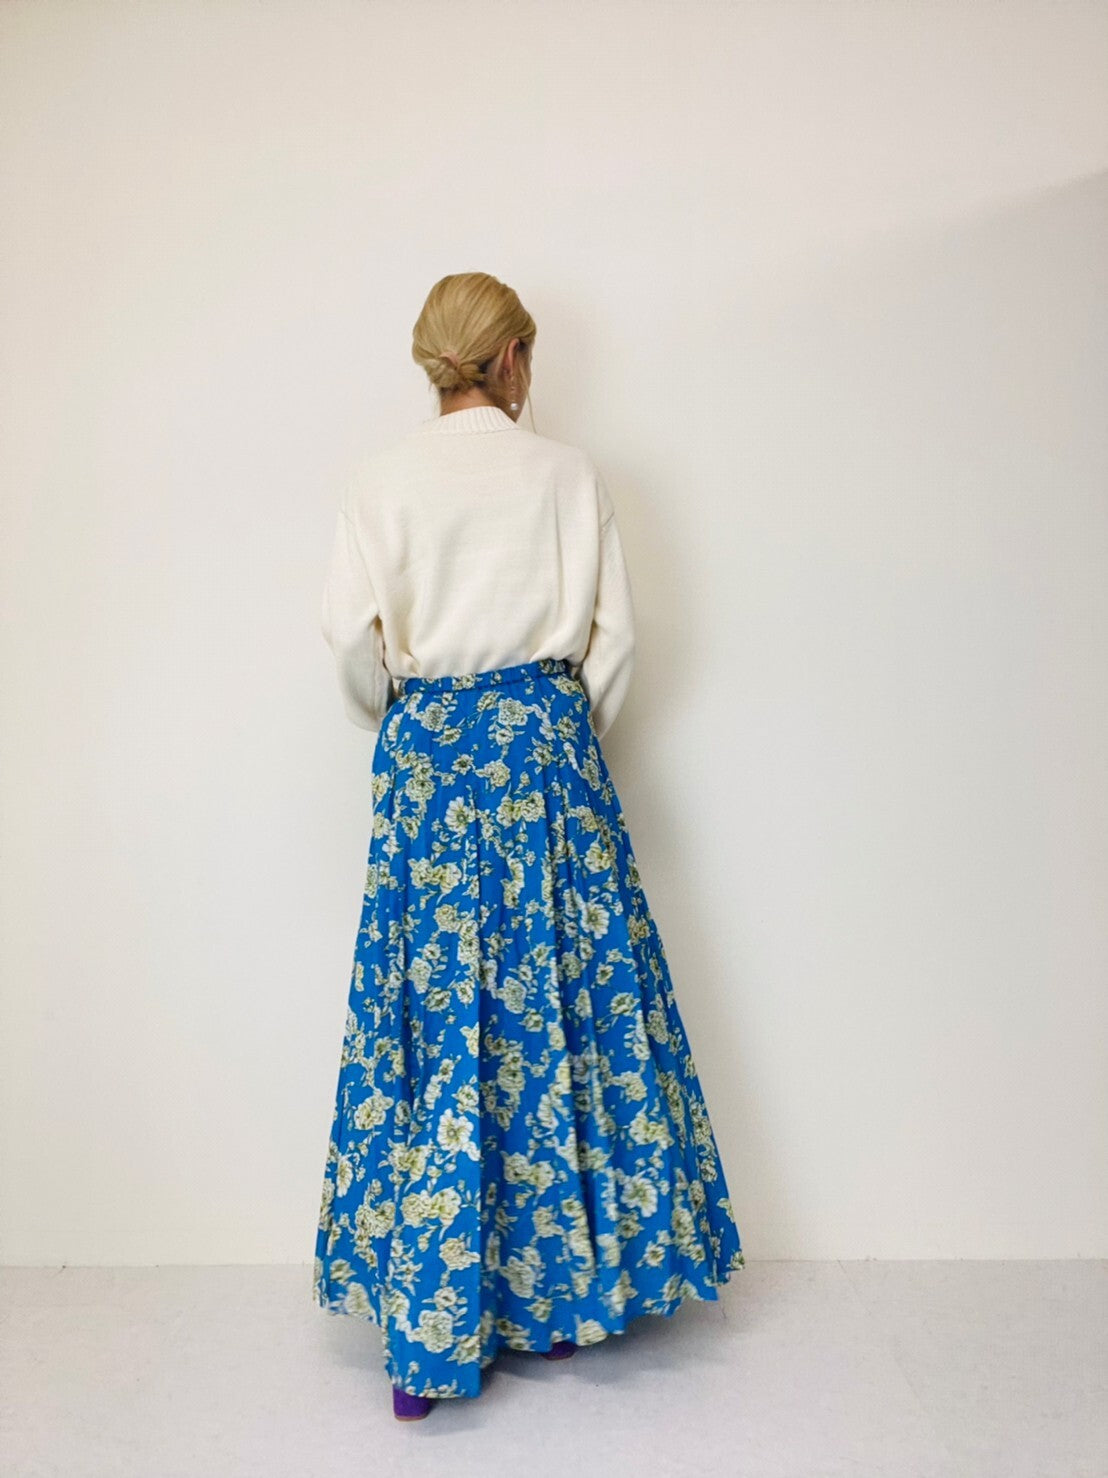 Titilate Valet (TEVALT) Flower Print Cotton Voile Long Flared Skirt